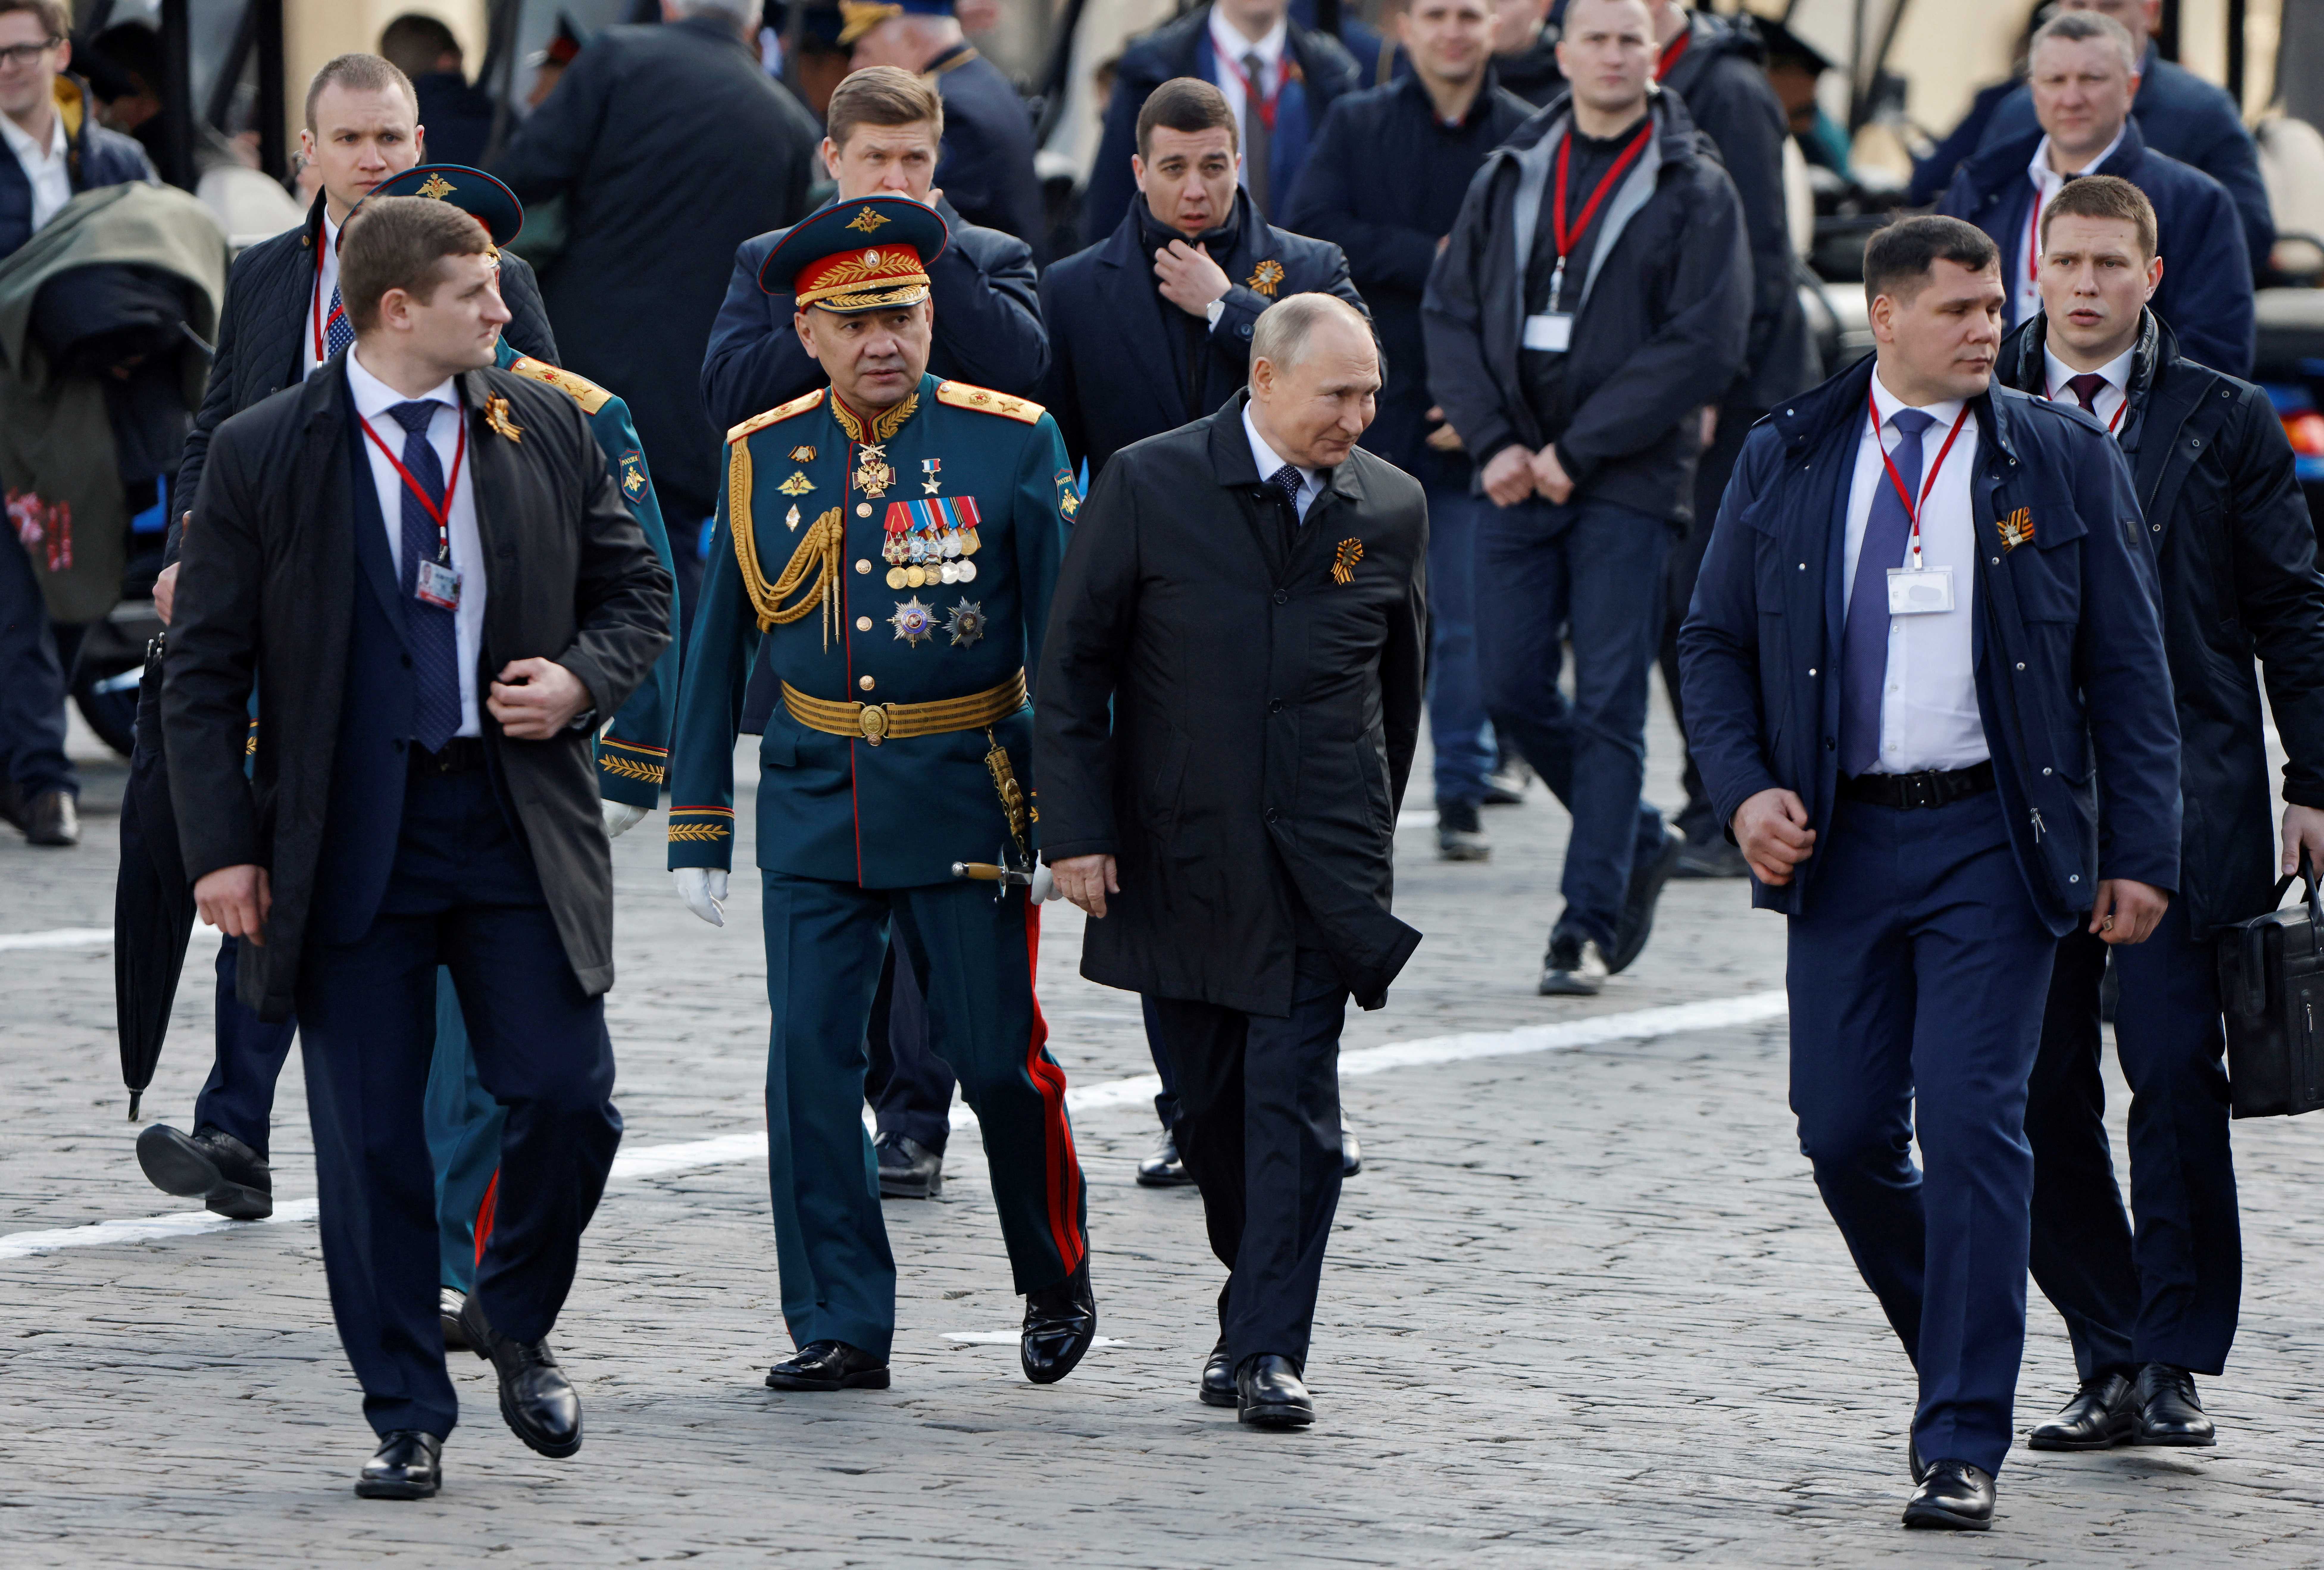 Ντμίτρι Κοβάλεφ: Ο Βλαντιμίρ Πούτιν βρήκε τον διάδοχό του; Ο διάλογος που άναψε φωτιές